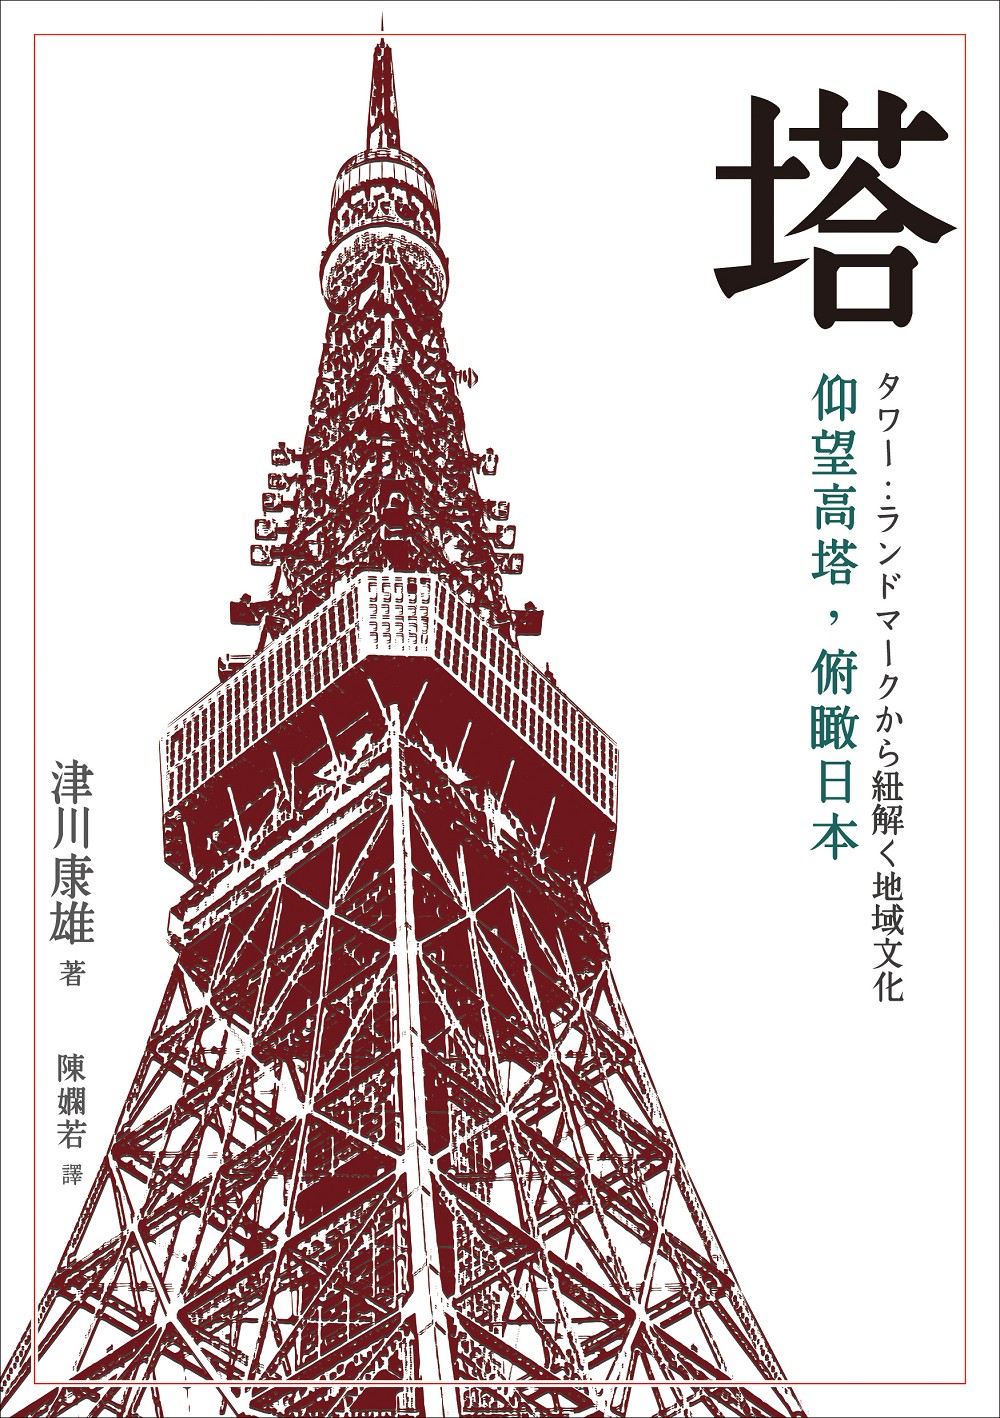 塔：仰望高塔，俯瞰日本